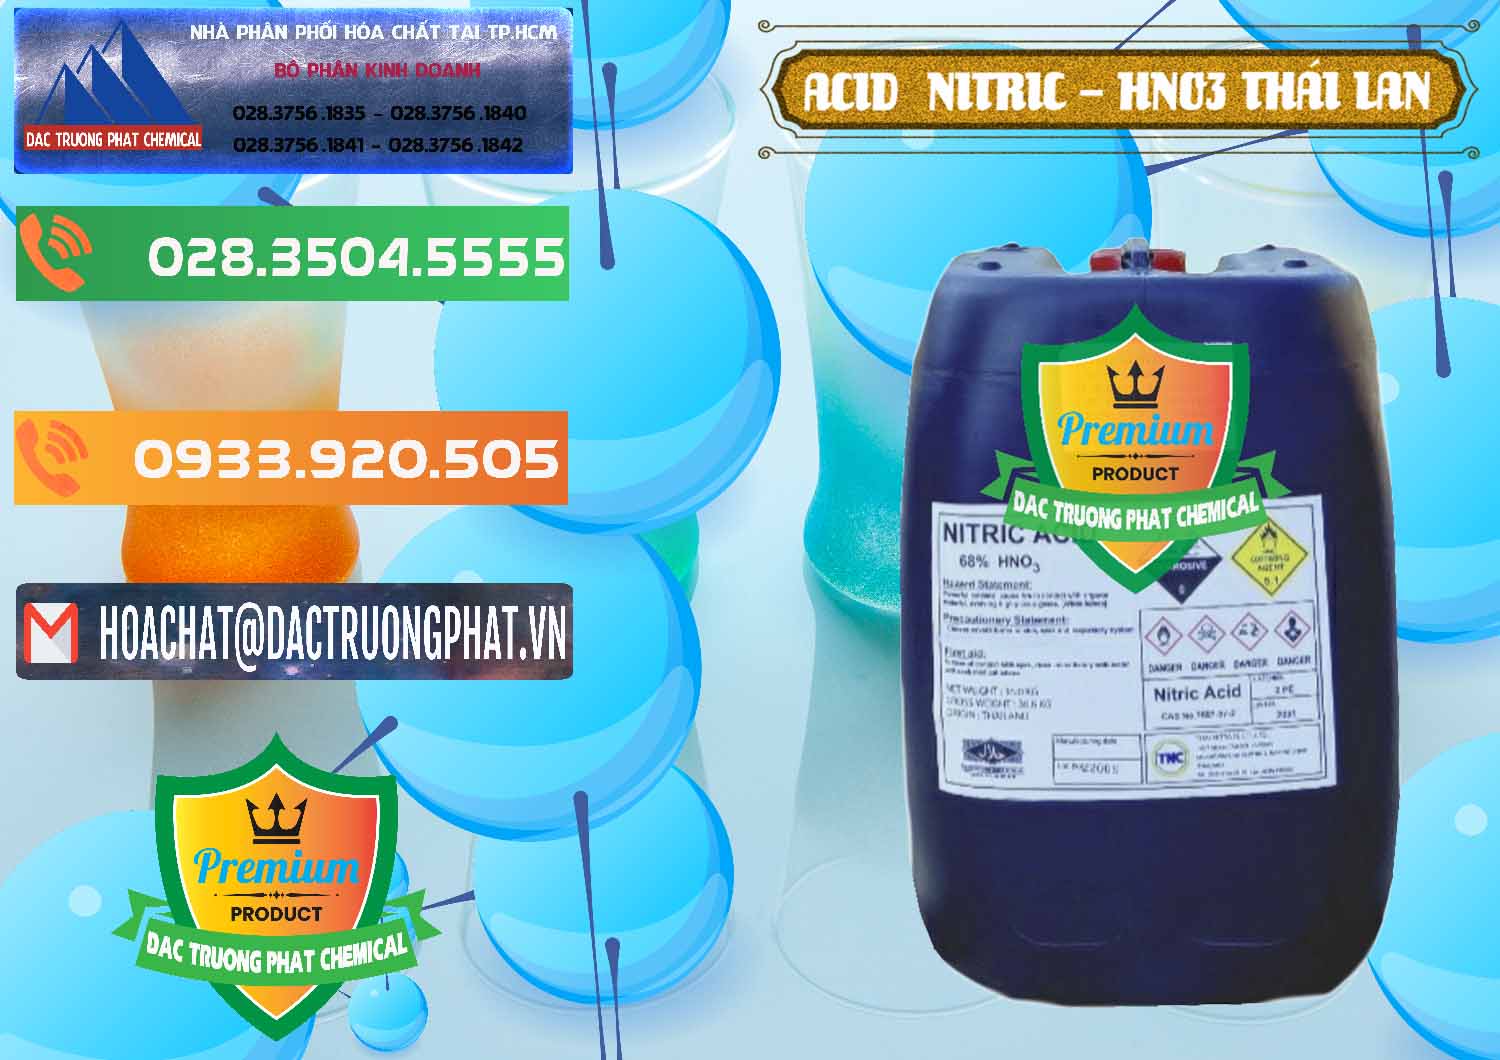 Nhà cung cấp & bán Acid Nitric – Axit Nitric HNO3 Thái Lan Thailand - 0344 - Nhập khẩu _ cung cấp hóa chất tại TP.HCM - hoachatxulynuoc.com.vn